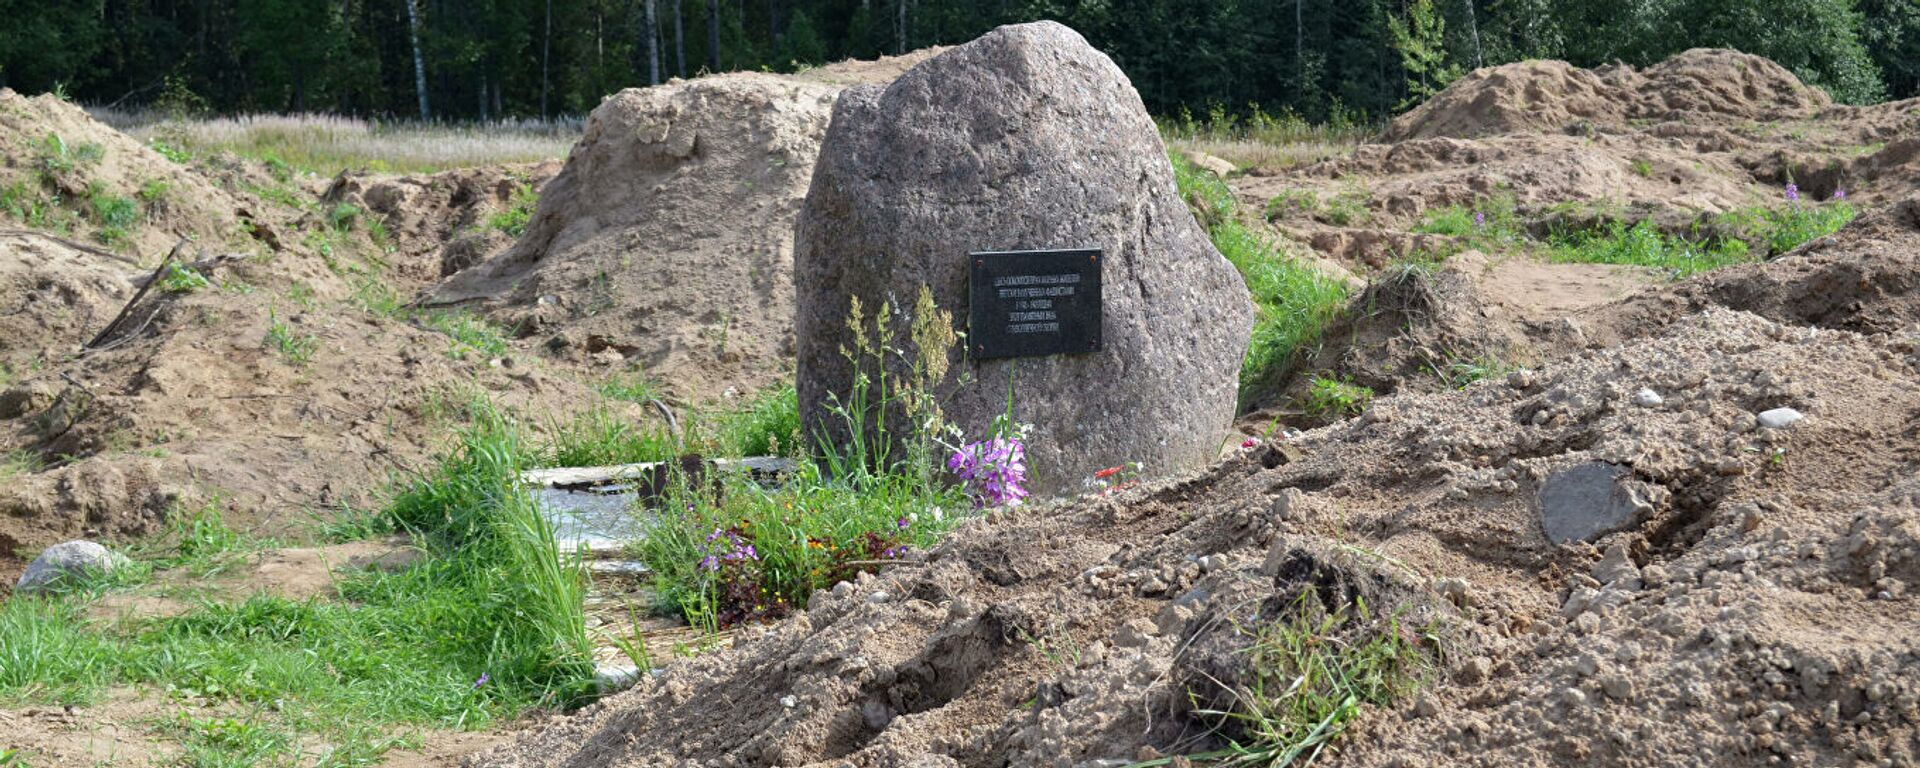 Место раскопок в районе деревни Жестяная Горка, где следователи обнаружили около 500 тел жертв латвийских карателей - Sputnik Узбекистан, 1920, 27.10.2020